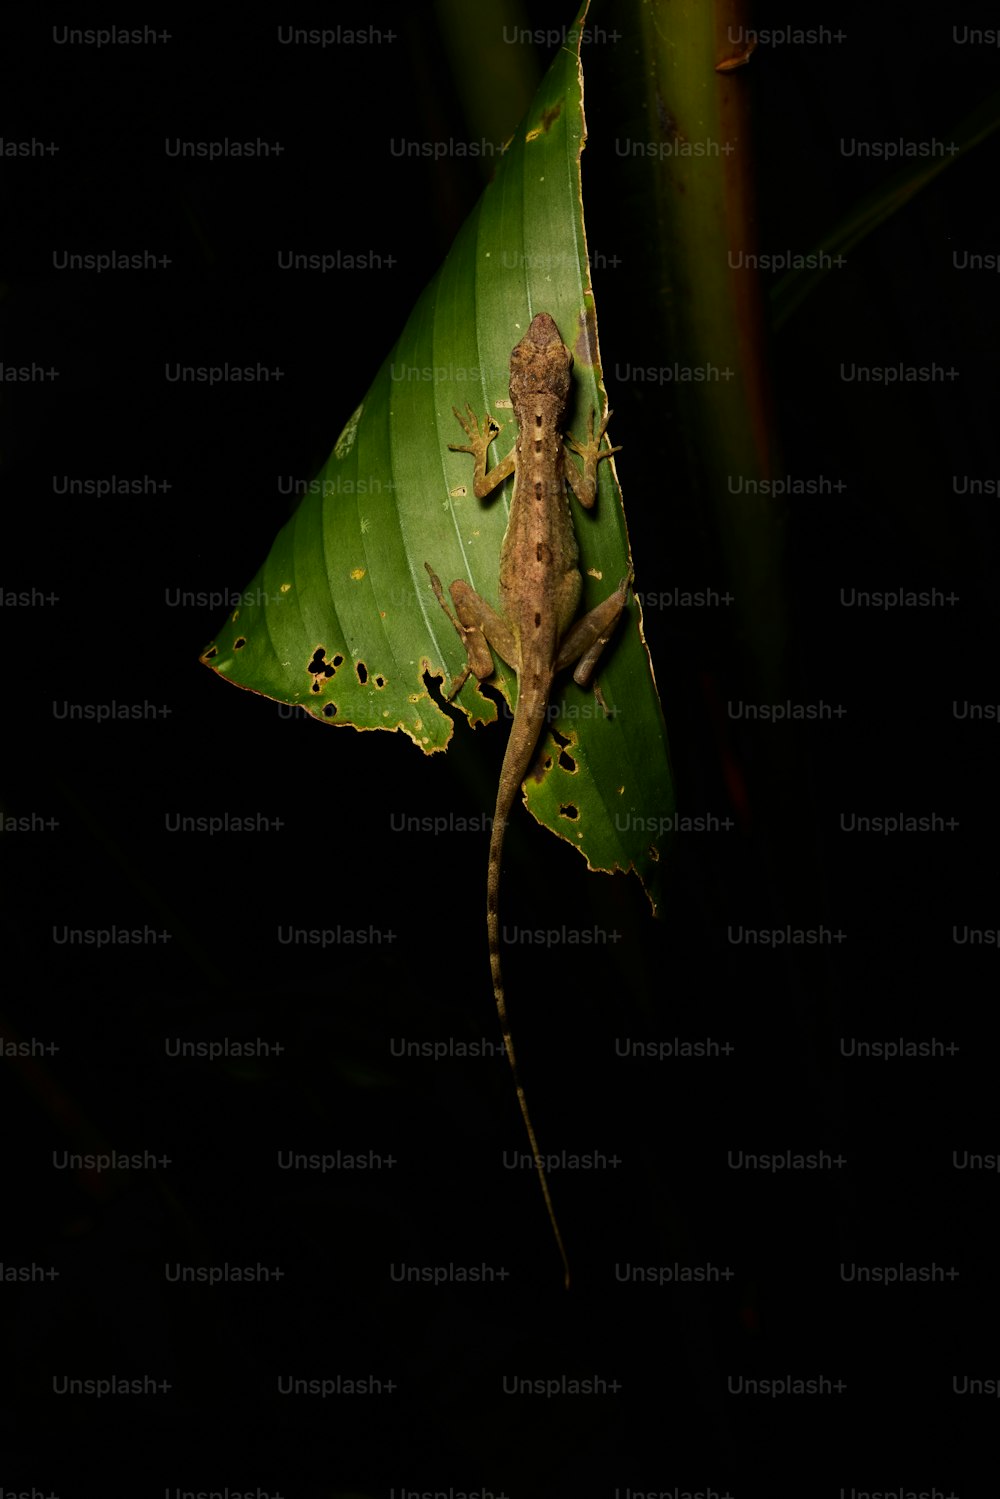 a lizard is sitting on a leaf in the dark